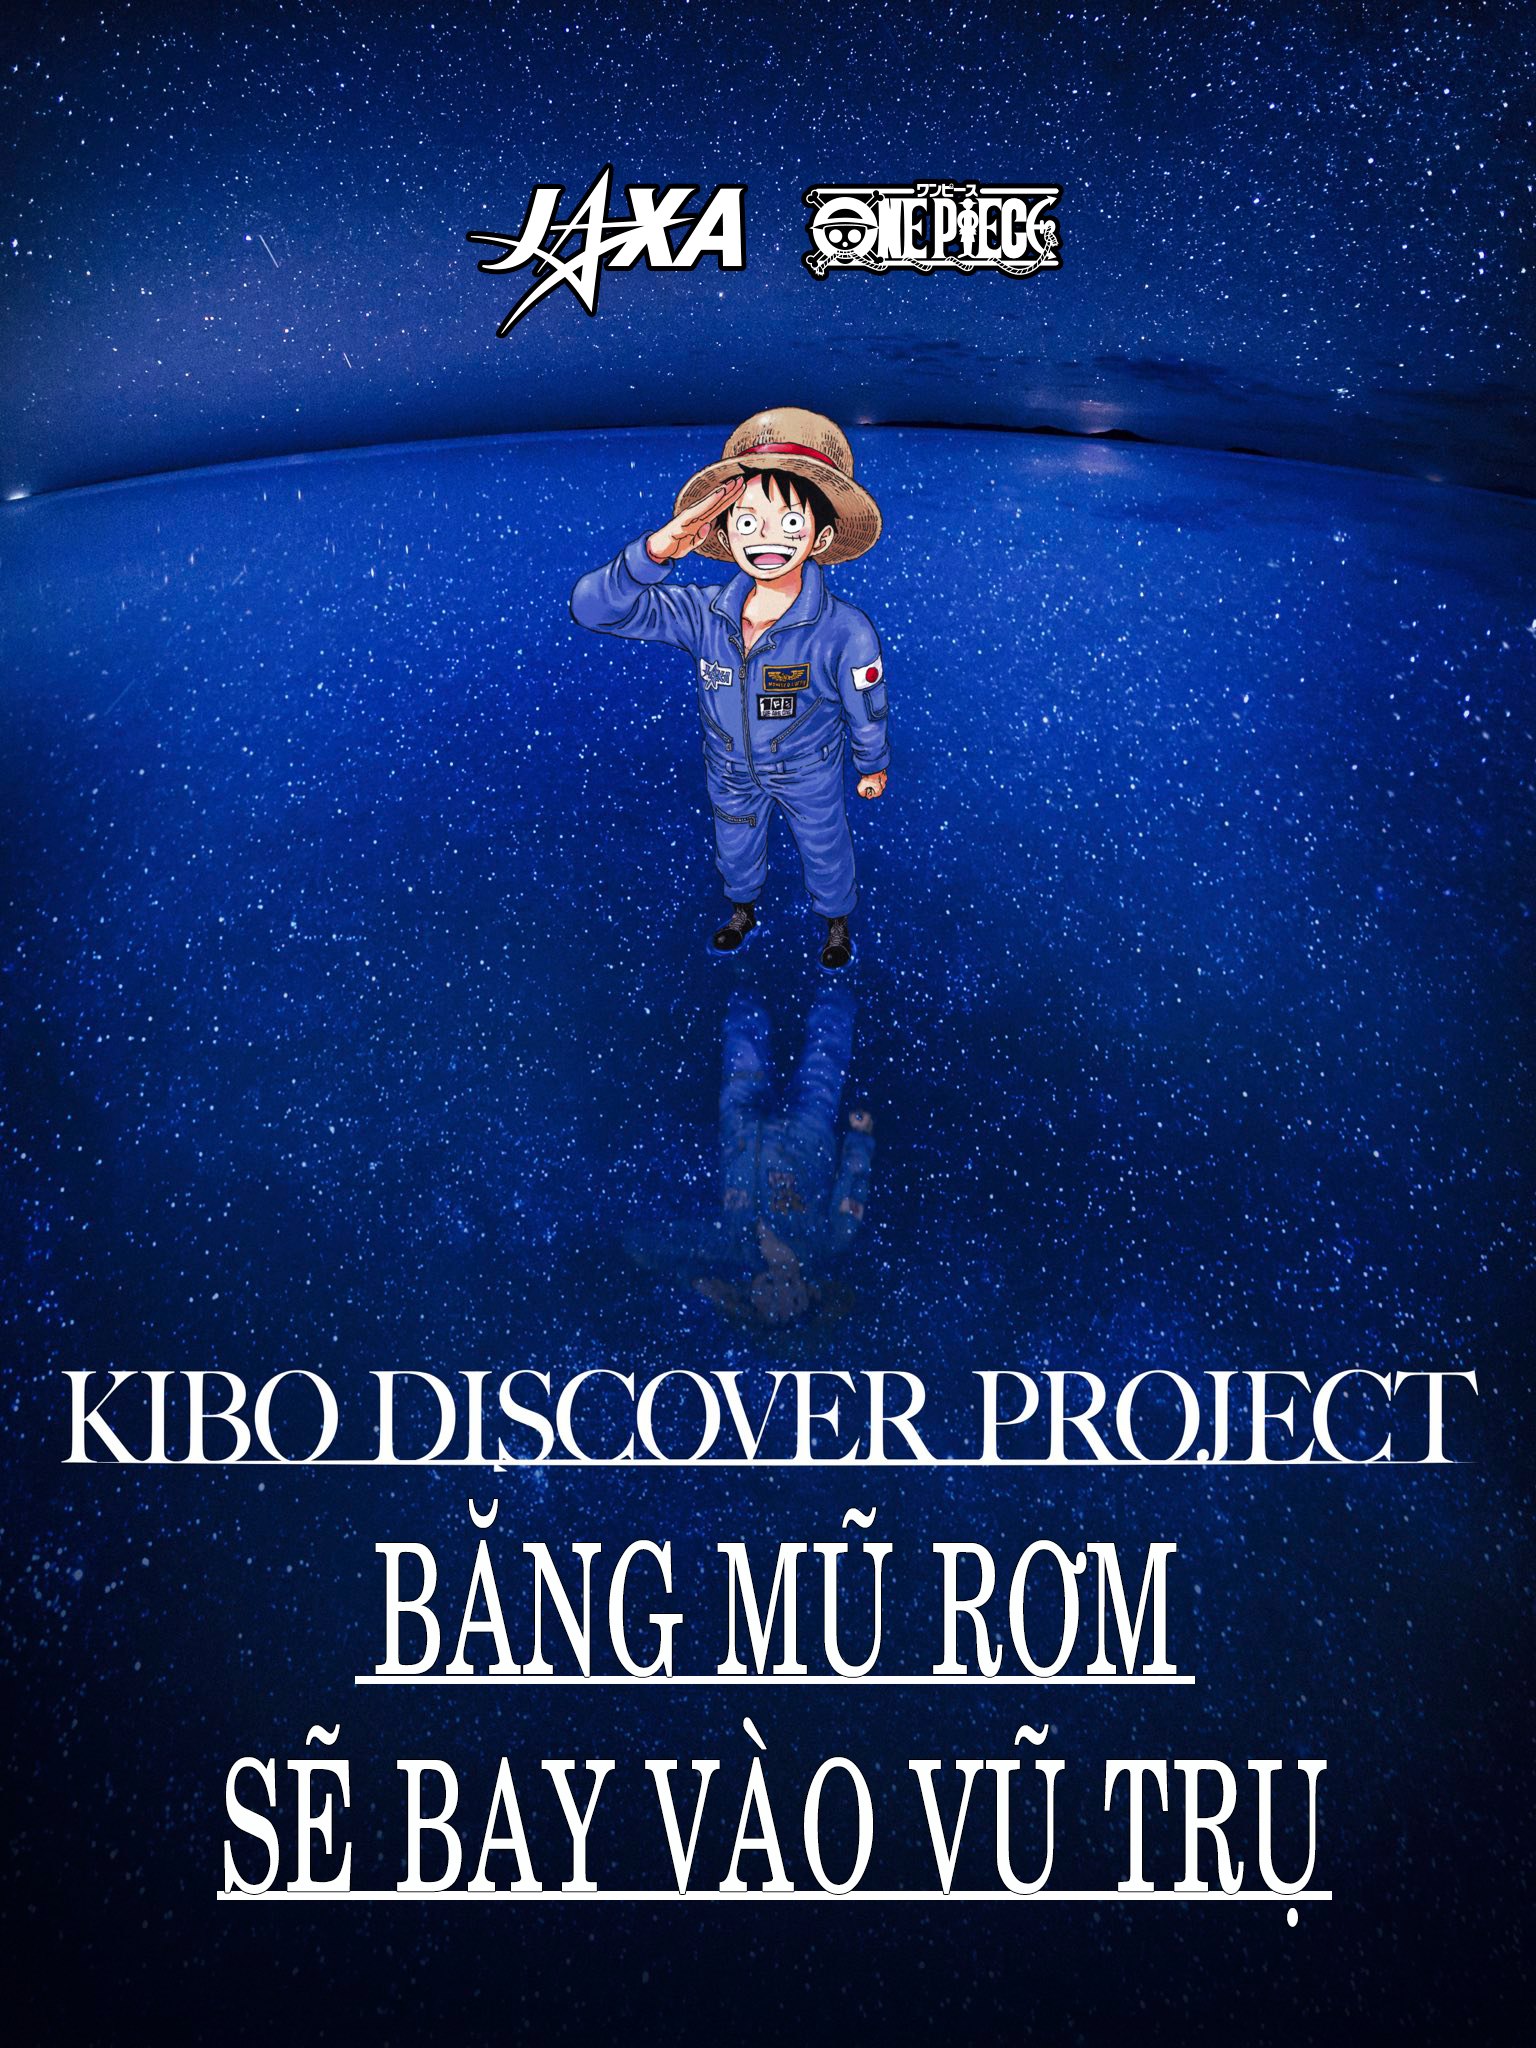 Vì quá nổi tiếng ở Nhật Bản, One Piece được ra ngoài vũ trụ vào tháng 8 để đi tìm kho báu vĩ đại nhất vũ trụ - Ảnh 1.